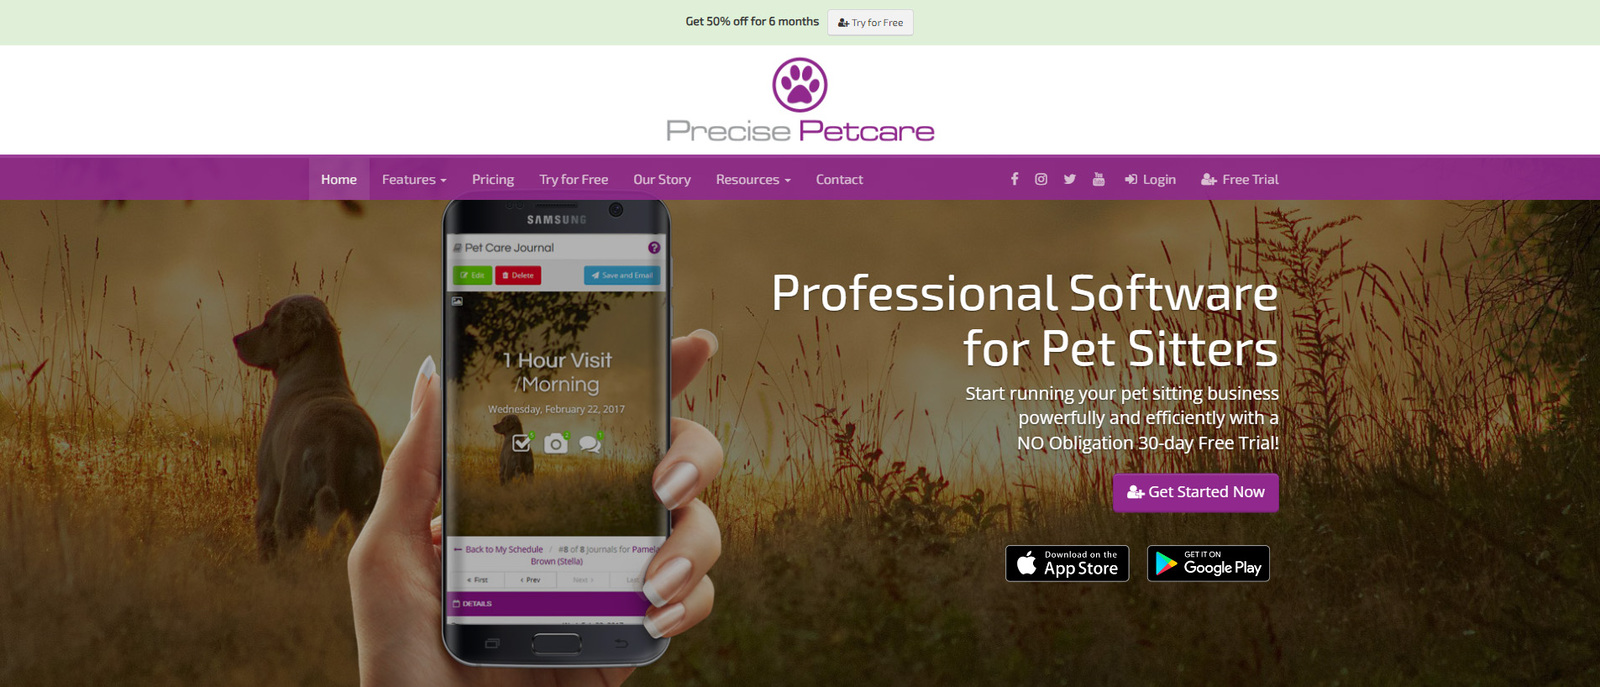 Изображение Precision Petcare, одного из лучших вариантов программного обеспечения для ухода за домашними животными для тех, кто выгуливает домашних животных.